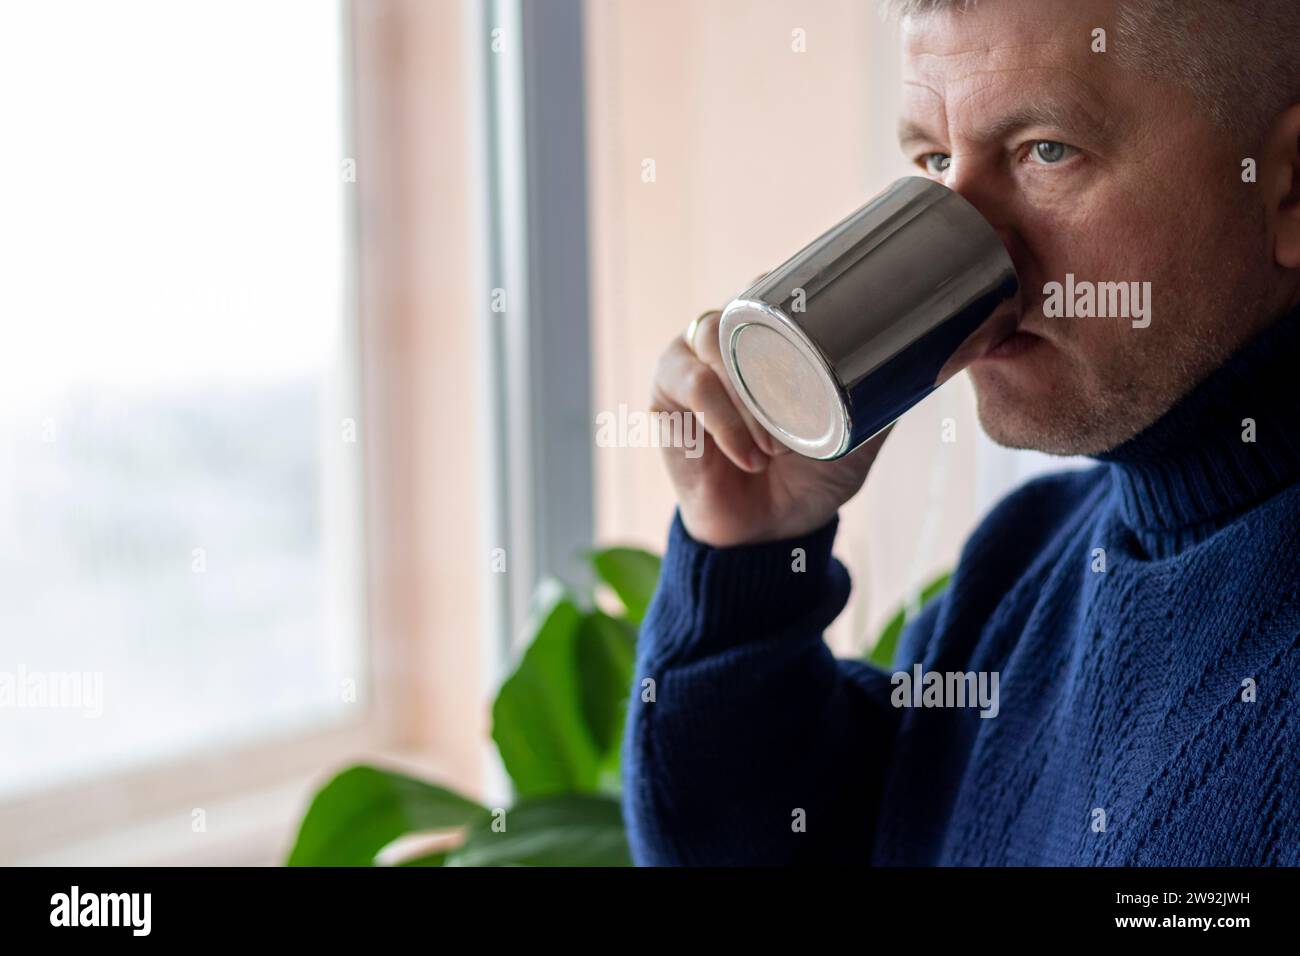 Porträt eines Mannes mittleren Alters mit grauen Haaren, der einen warmen, dunkelblauen Pullover trägt und Kaffee trinkt. Stockfoto